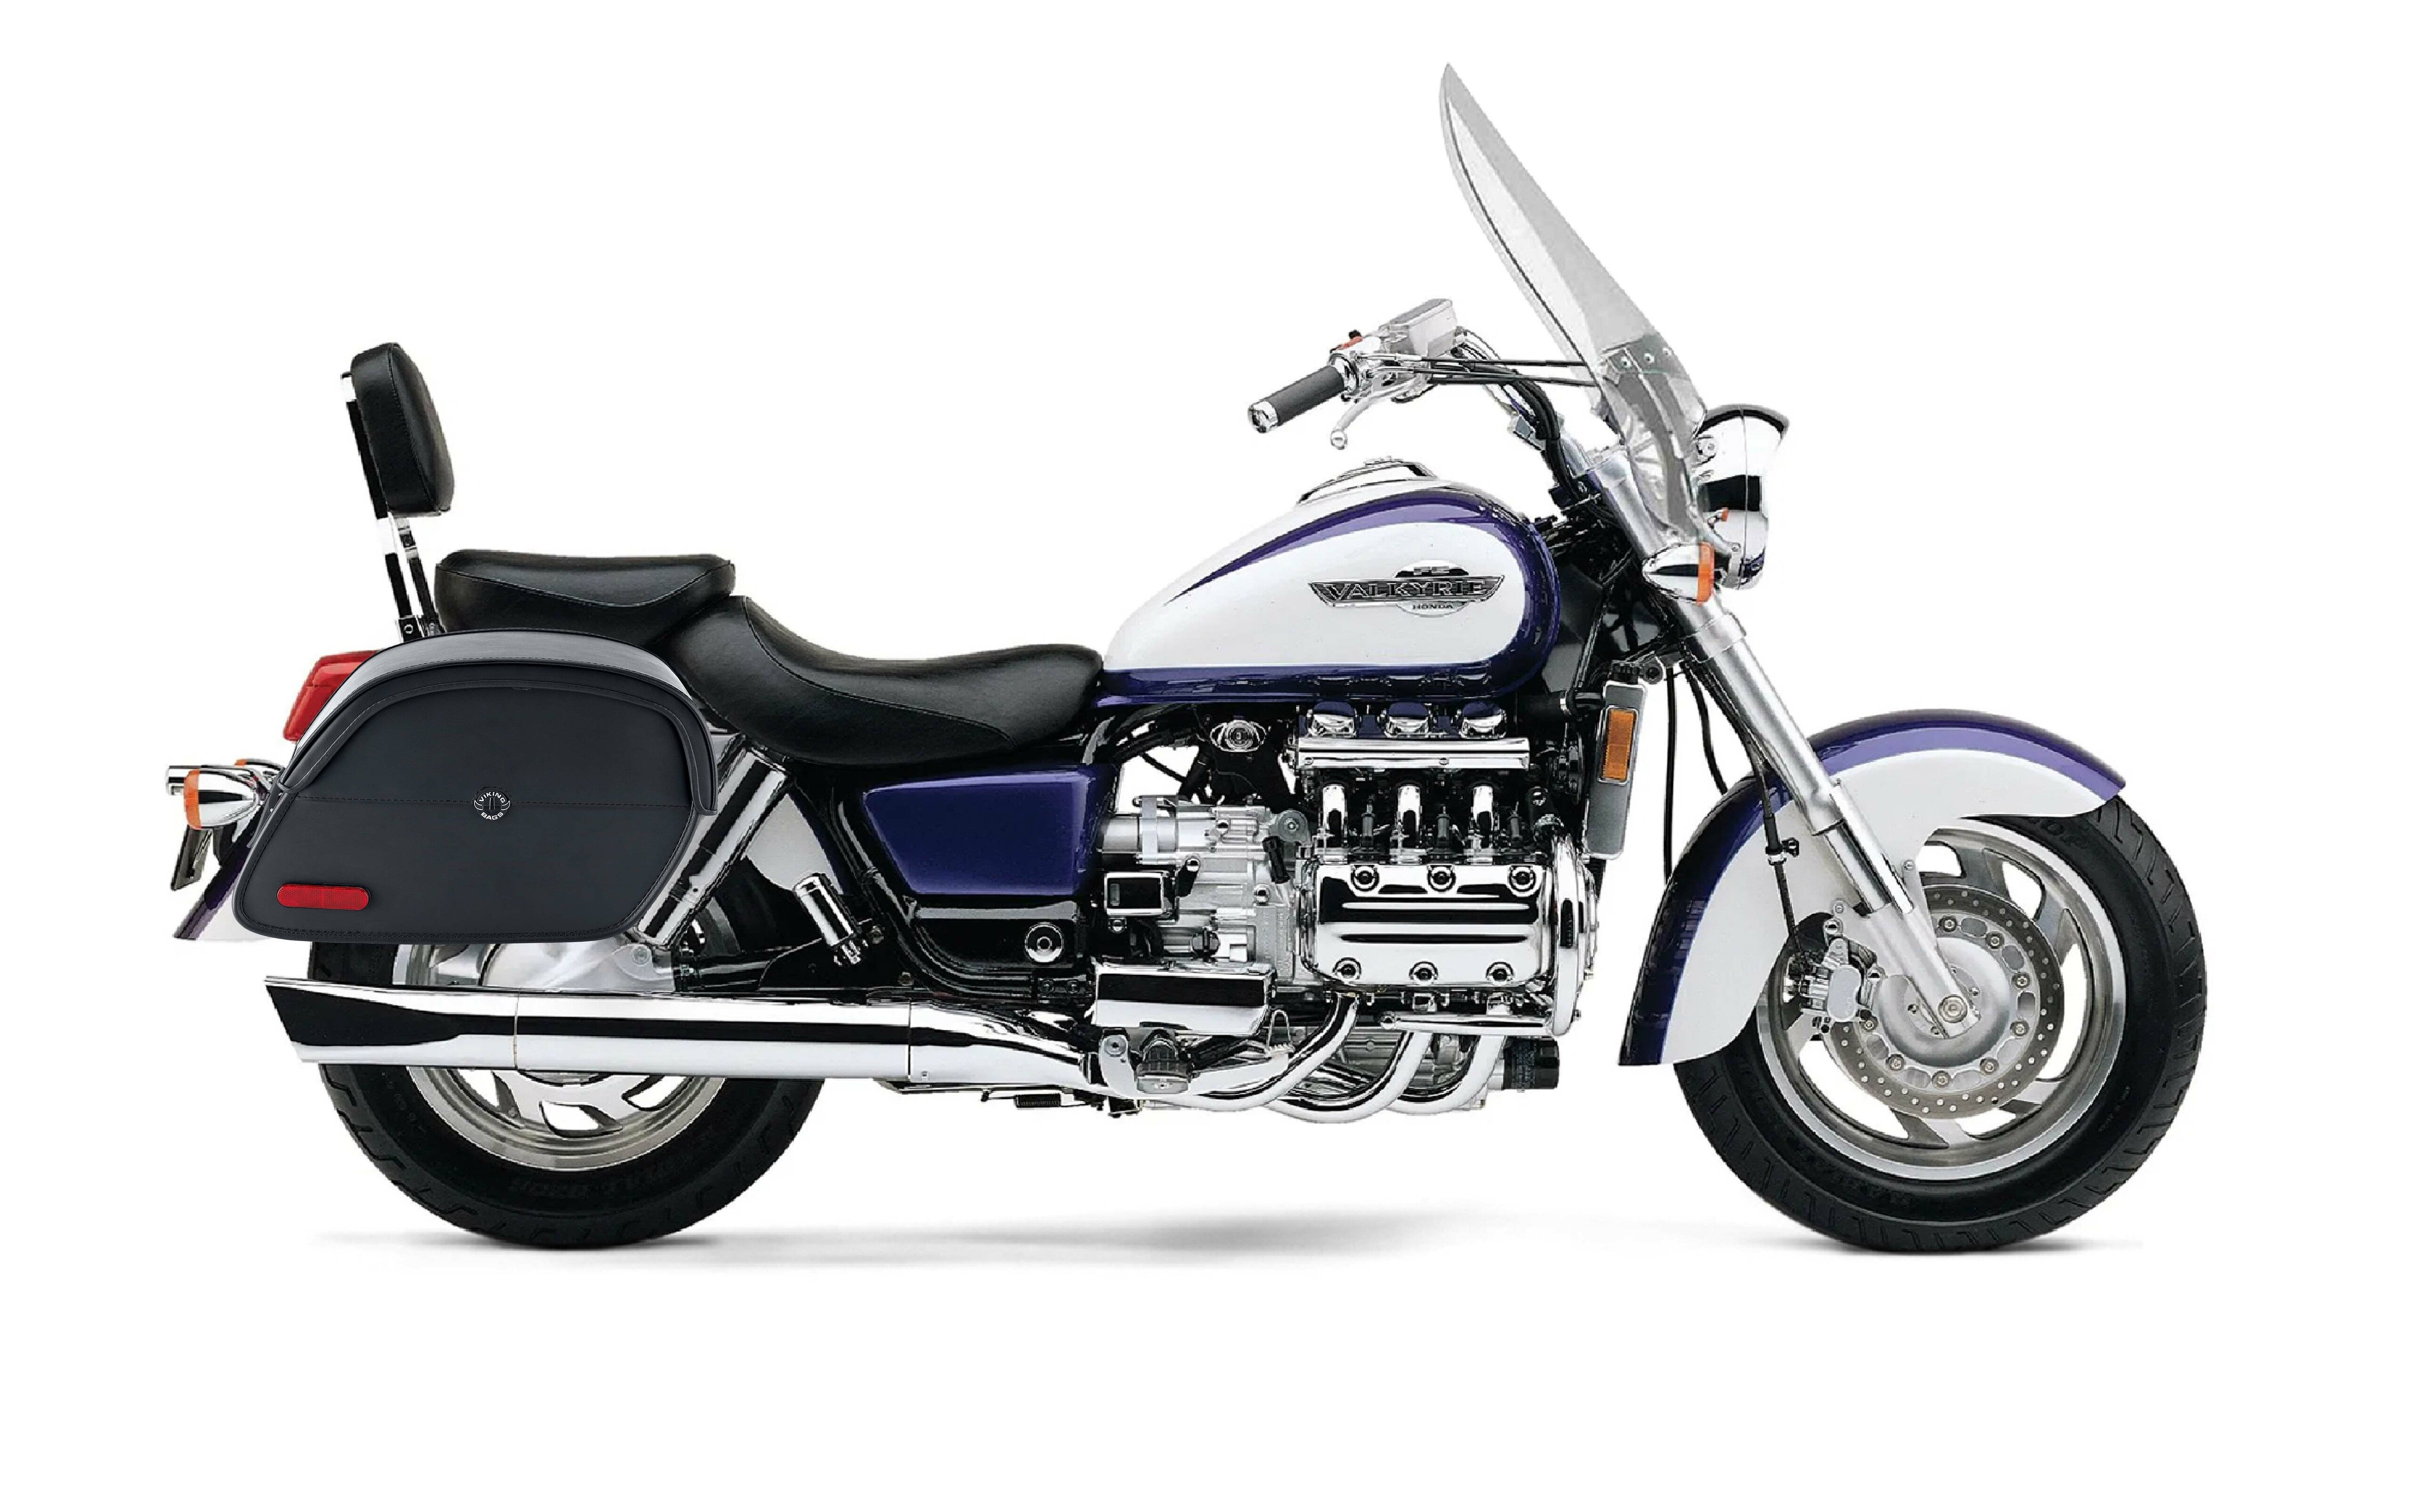 Viking California Large Honda 1500 Valkyrie Tourer Leather Motorcycle Saddlebags on Bike Photo @expand